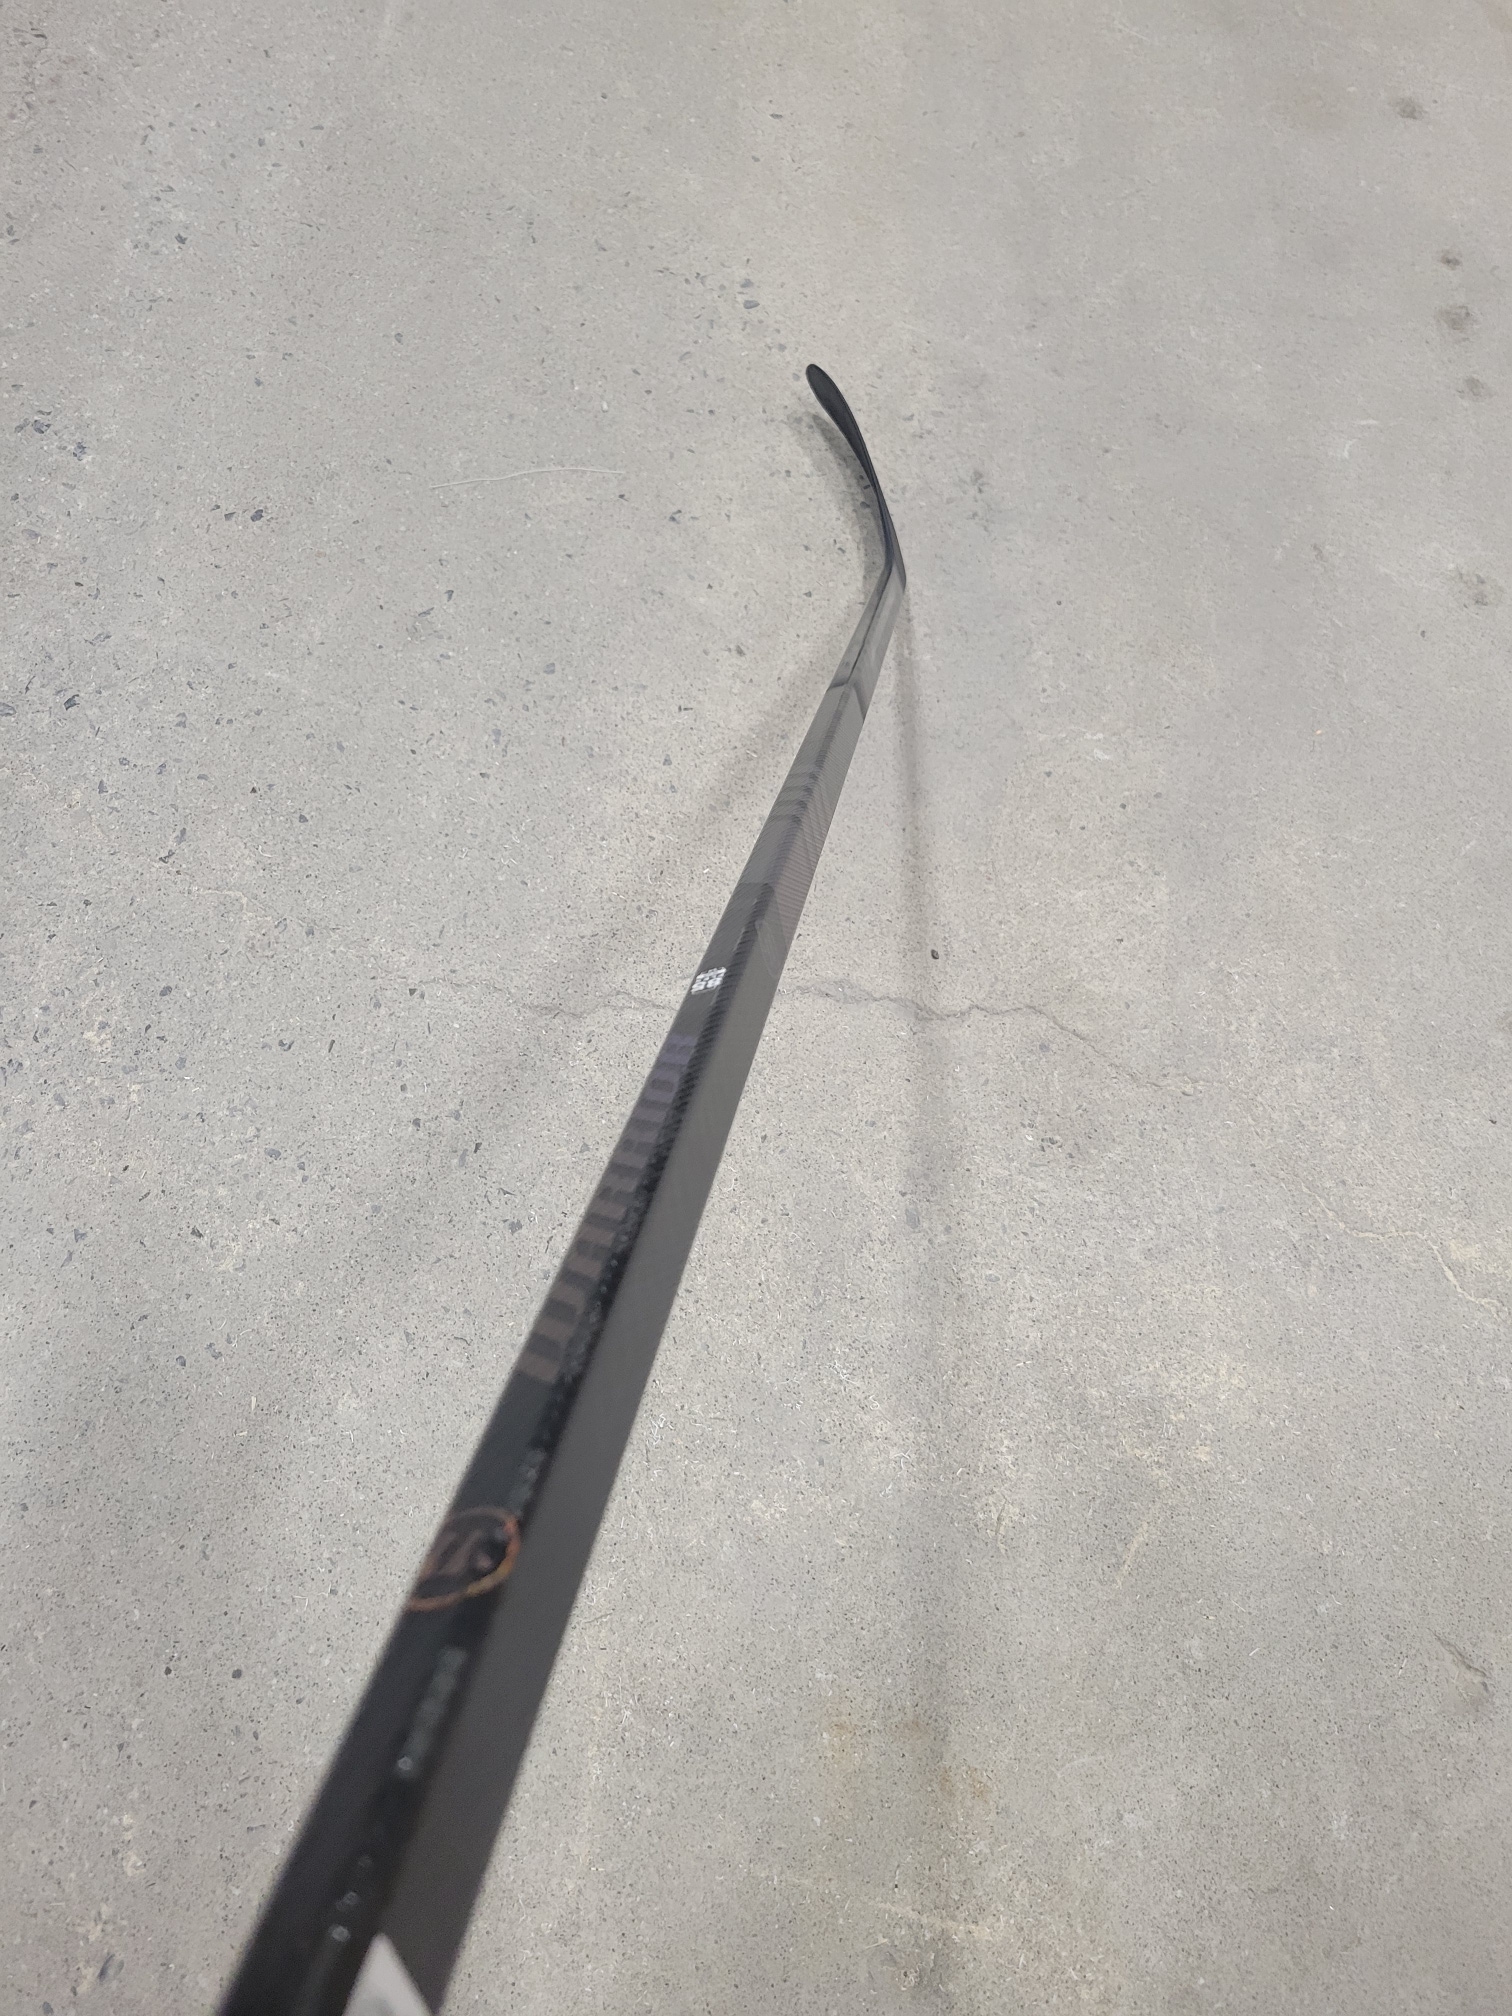 New Right Hand Warrior Super Novium Hockey Stick W28 85 flex